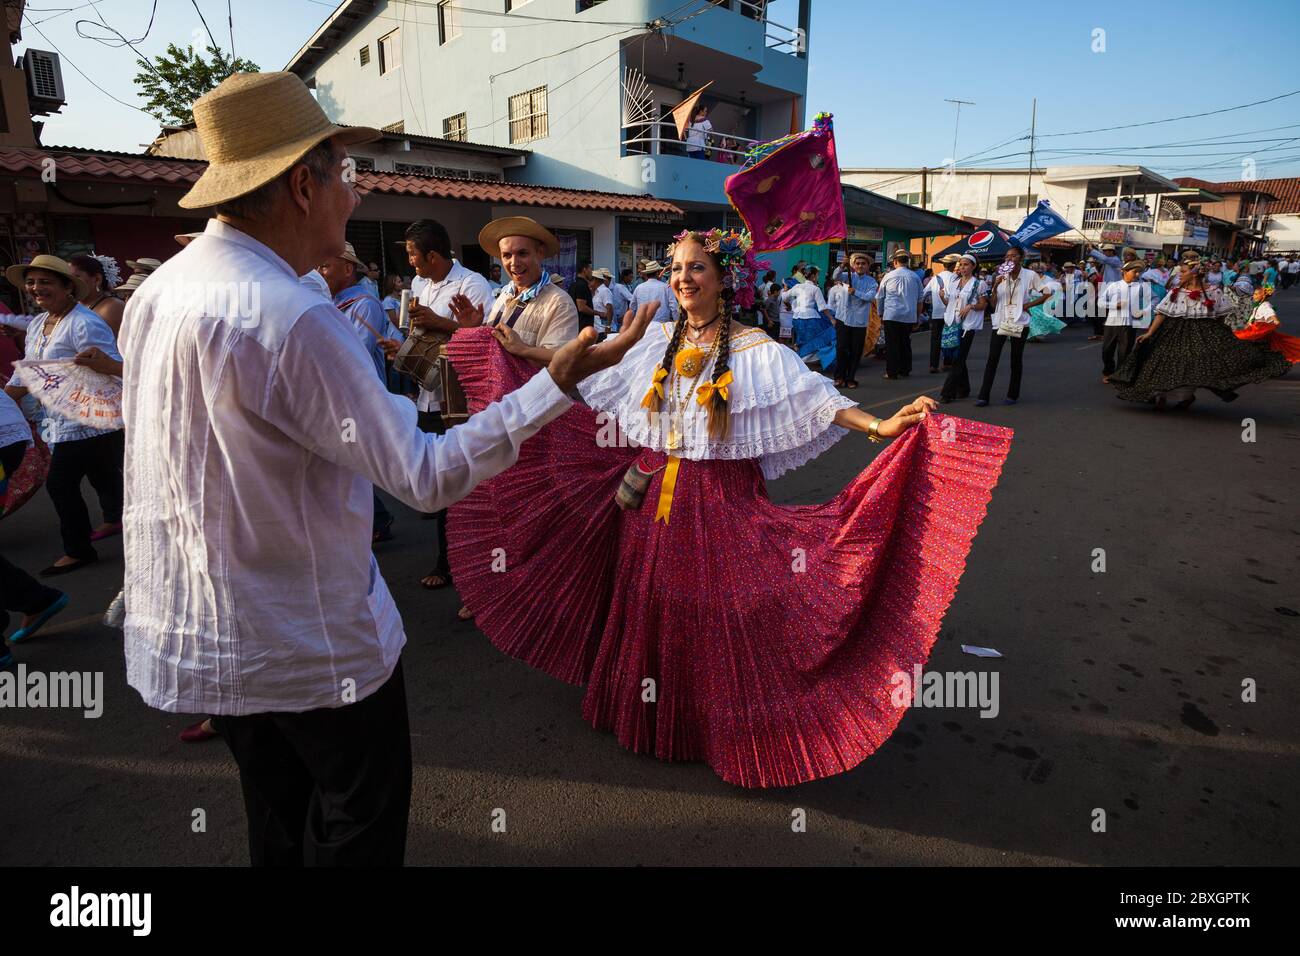 Mann und Frau tanzen auf der jährlichen Veranstaltung "El desfile de las mil polleras" (tausend Polleras) in Las Tablas, Provinz Los Santos, Republik Panama. Stockfoto